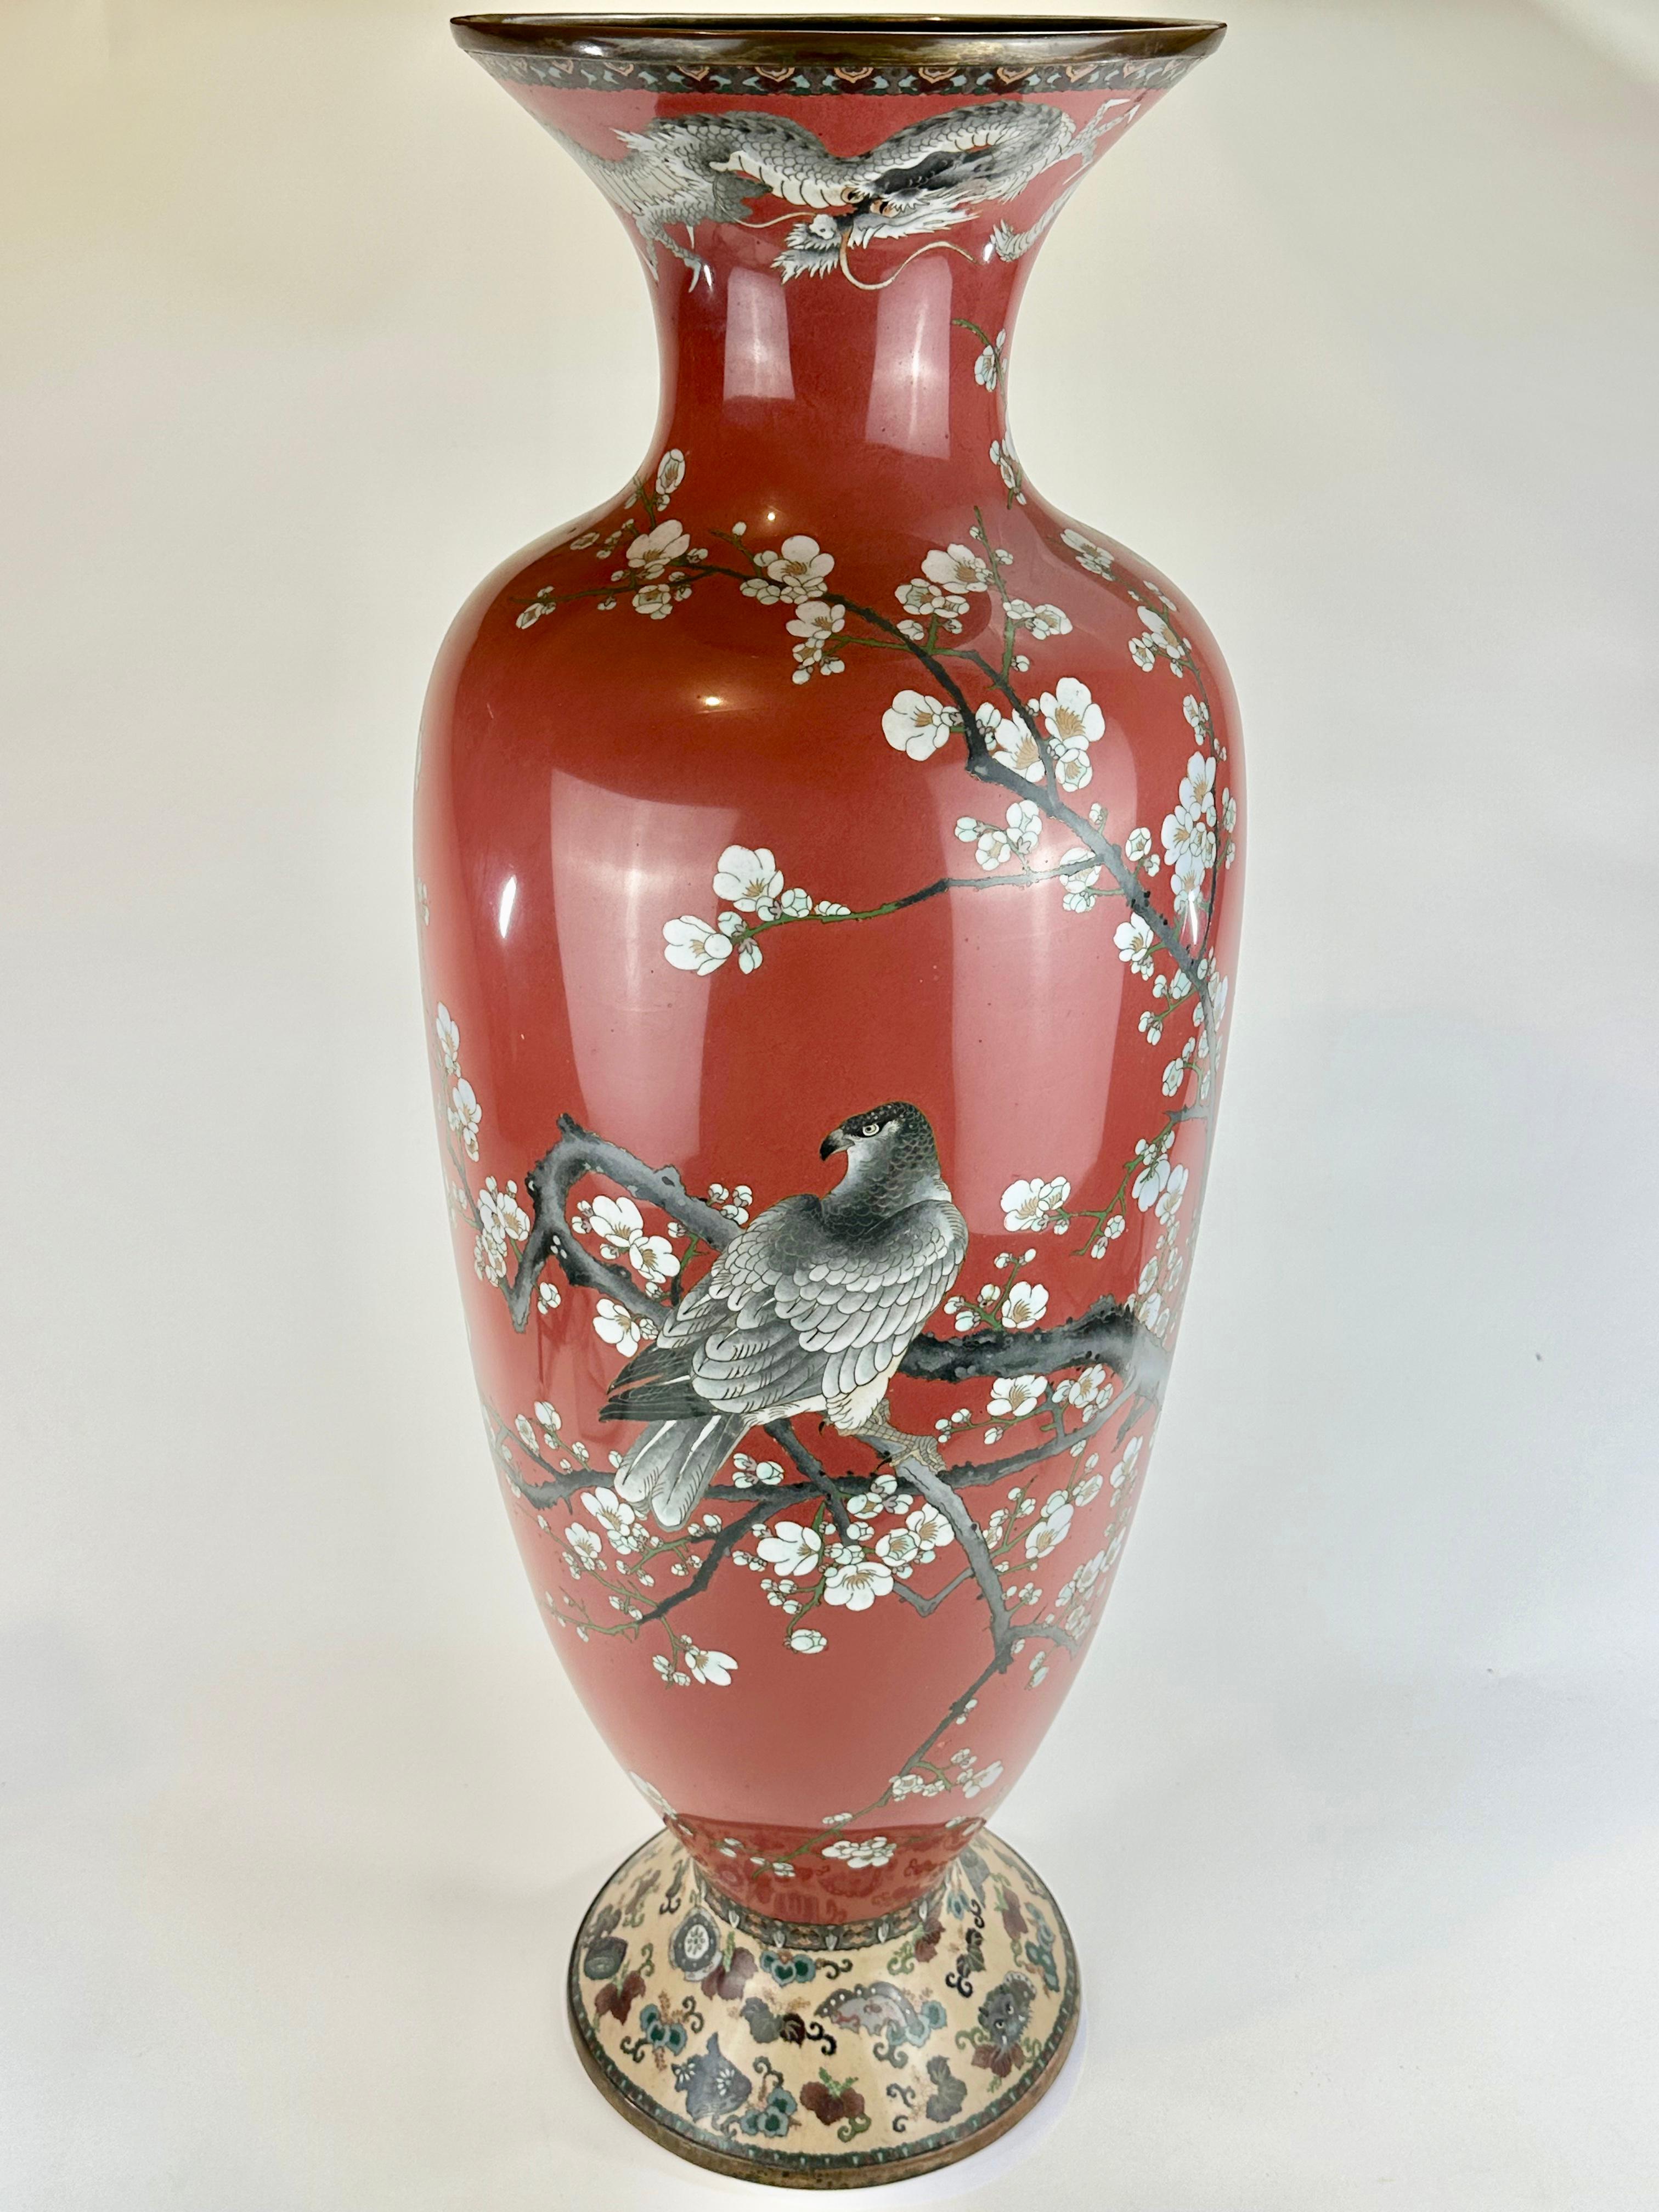 Disponible auprès de Shogun Art Gallery à Portland, Oregon, spécialisée depuis plus de 40 ans dans les arts et antiquités asiatiques.

Il s'agit d'un vase Cloisonné orné unique de l'ère Meiji (vers 1890) au Japon. Fabriqué en cuivre, alliages de